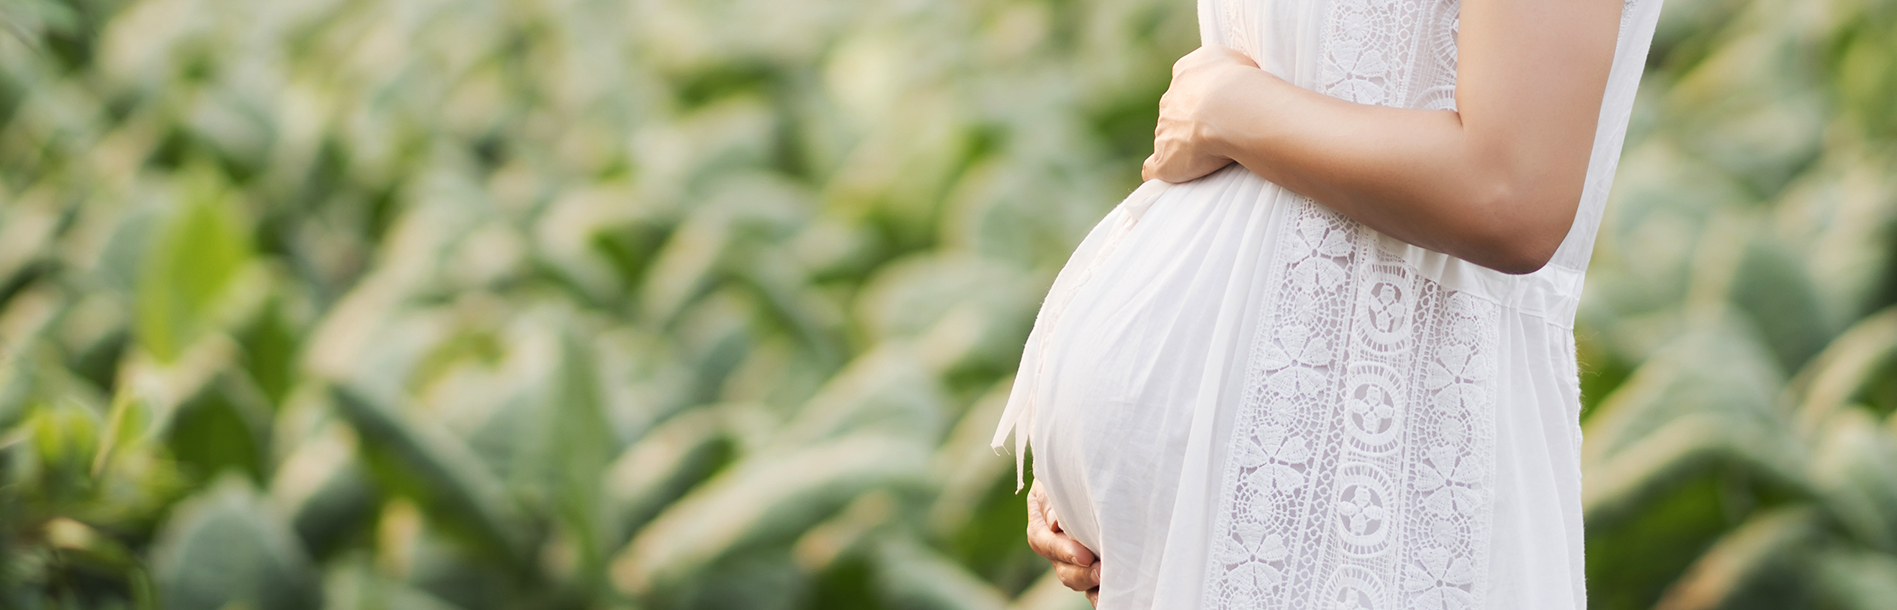 10 coisas que grávida não pode fazer